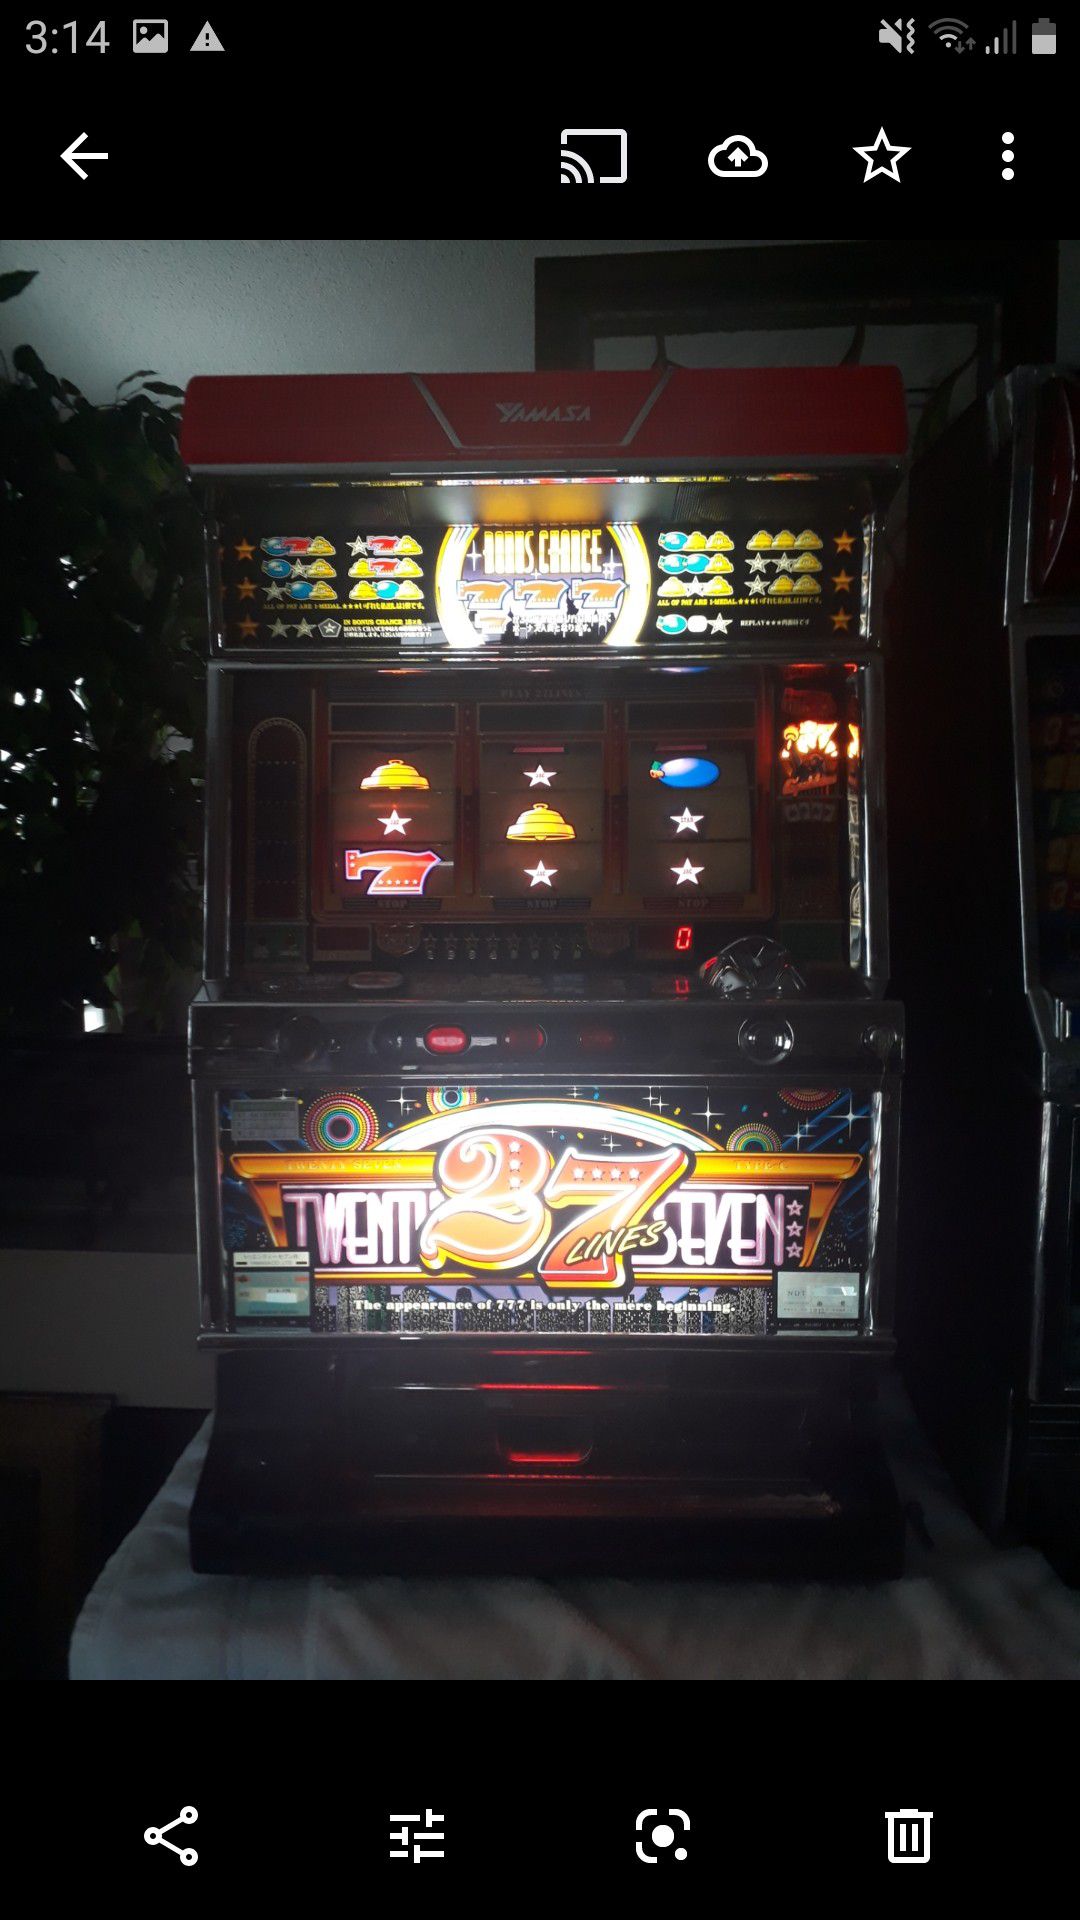 Yamasa "27 Lines" Slot Machine